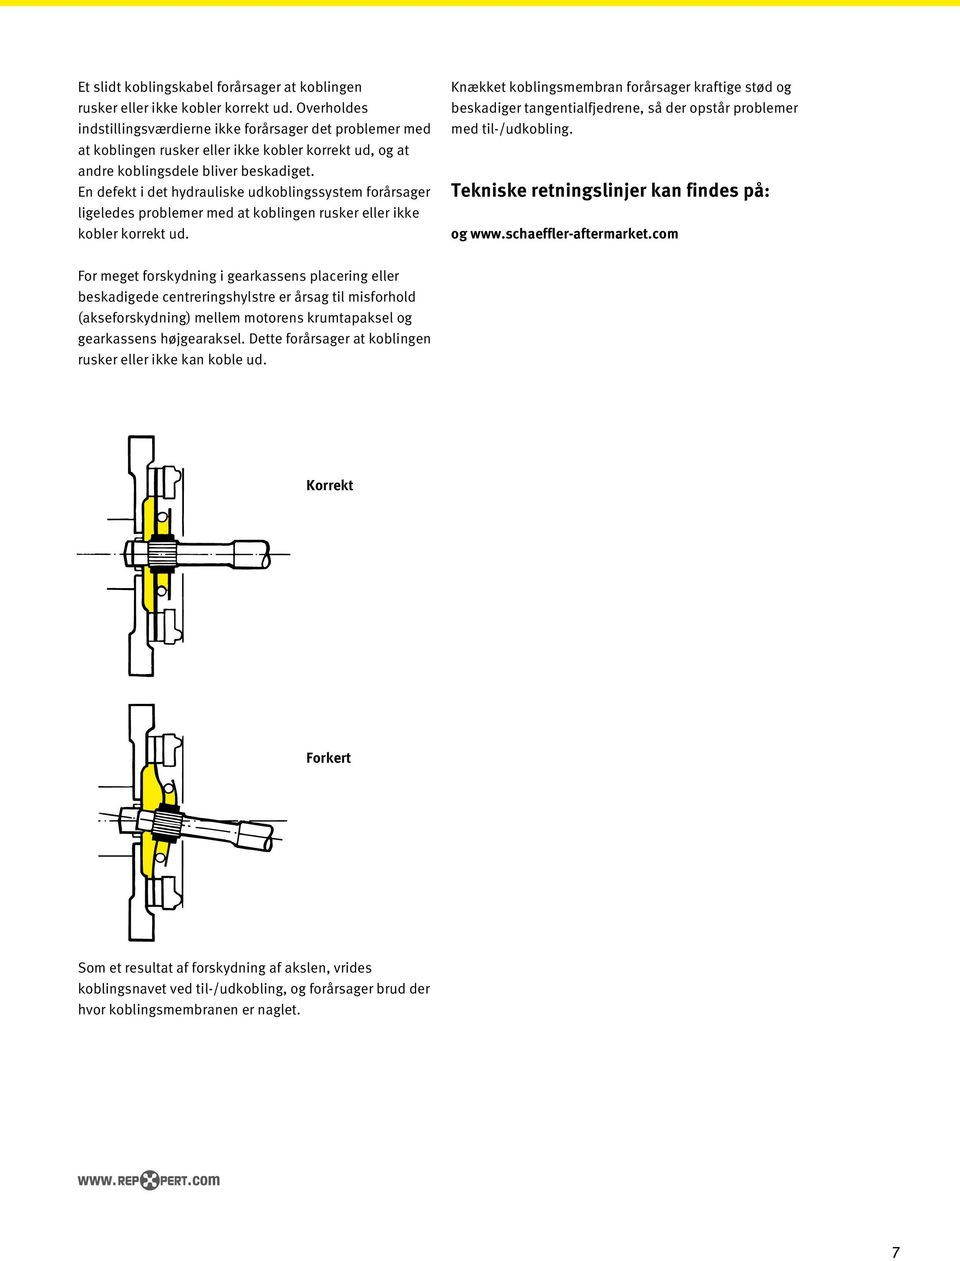 Fejldiagnostik. Instruktioner for vurdering af problemer med  koblingssystemer - PDF Gratis download